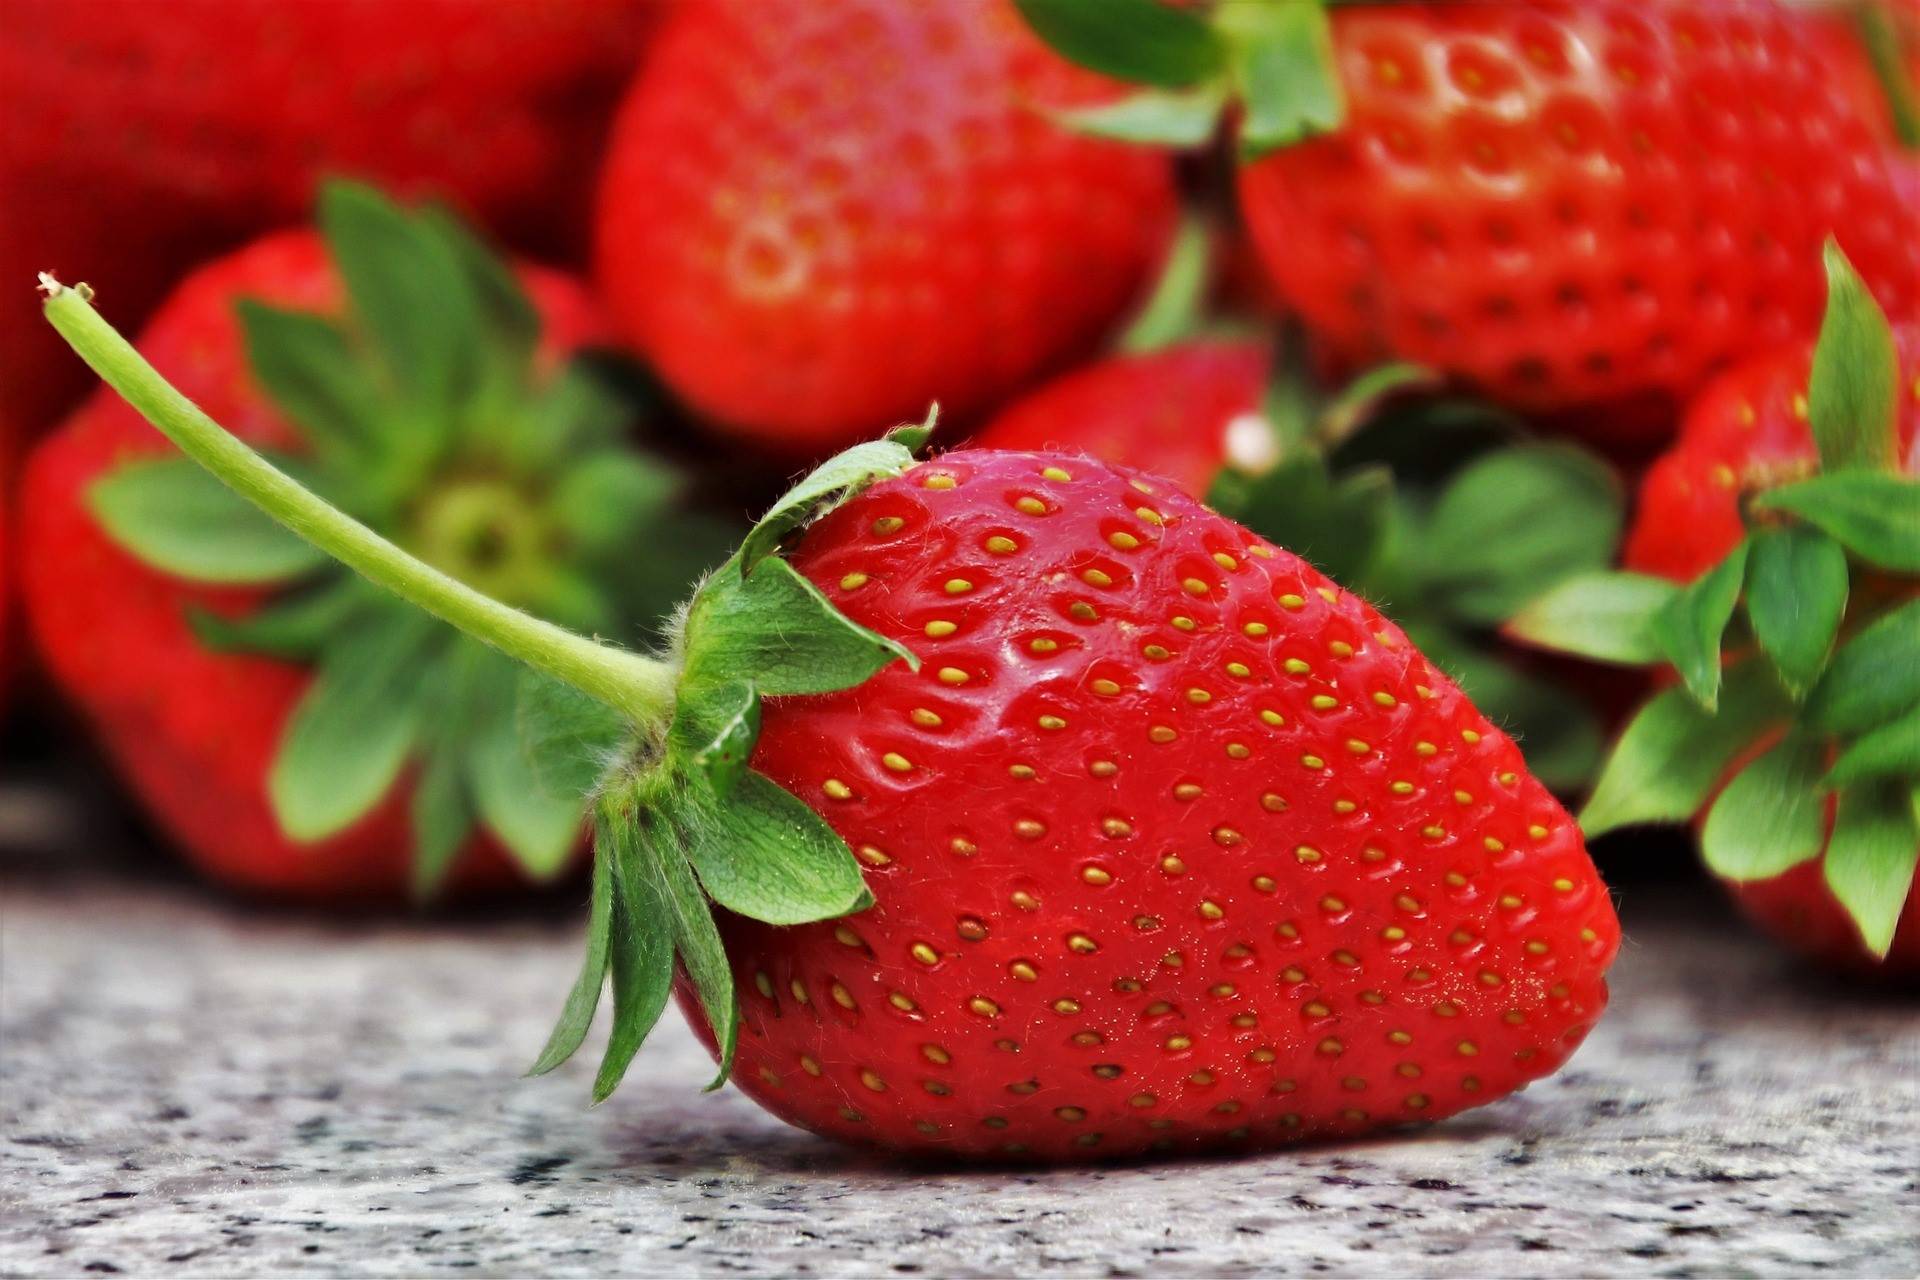 Heimische Erdbeeren naschen, ist gesund.